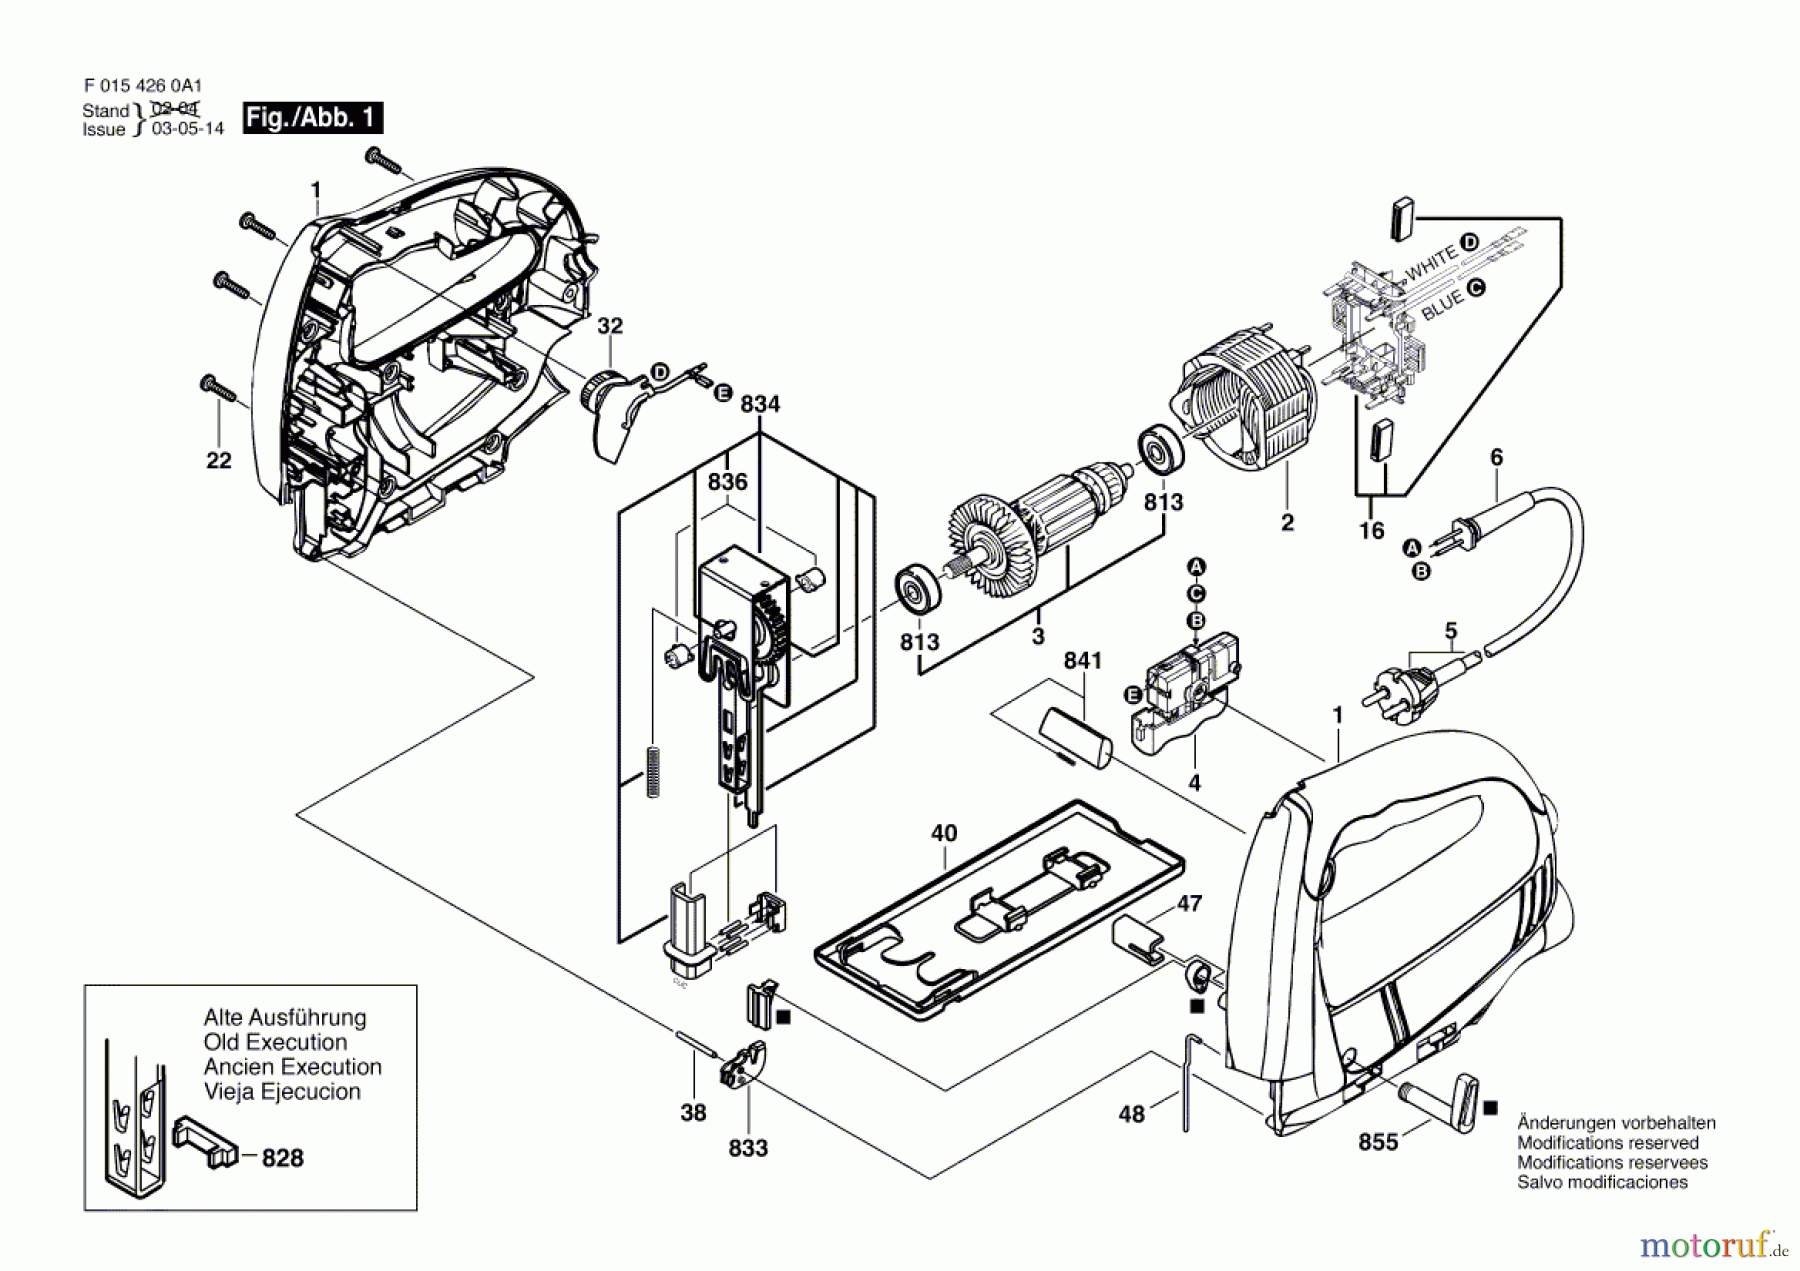  Bosch Werkzeug Stichsäge 4260 Seite 1